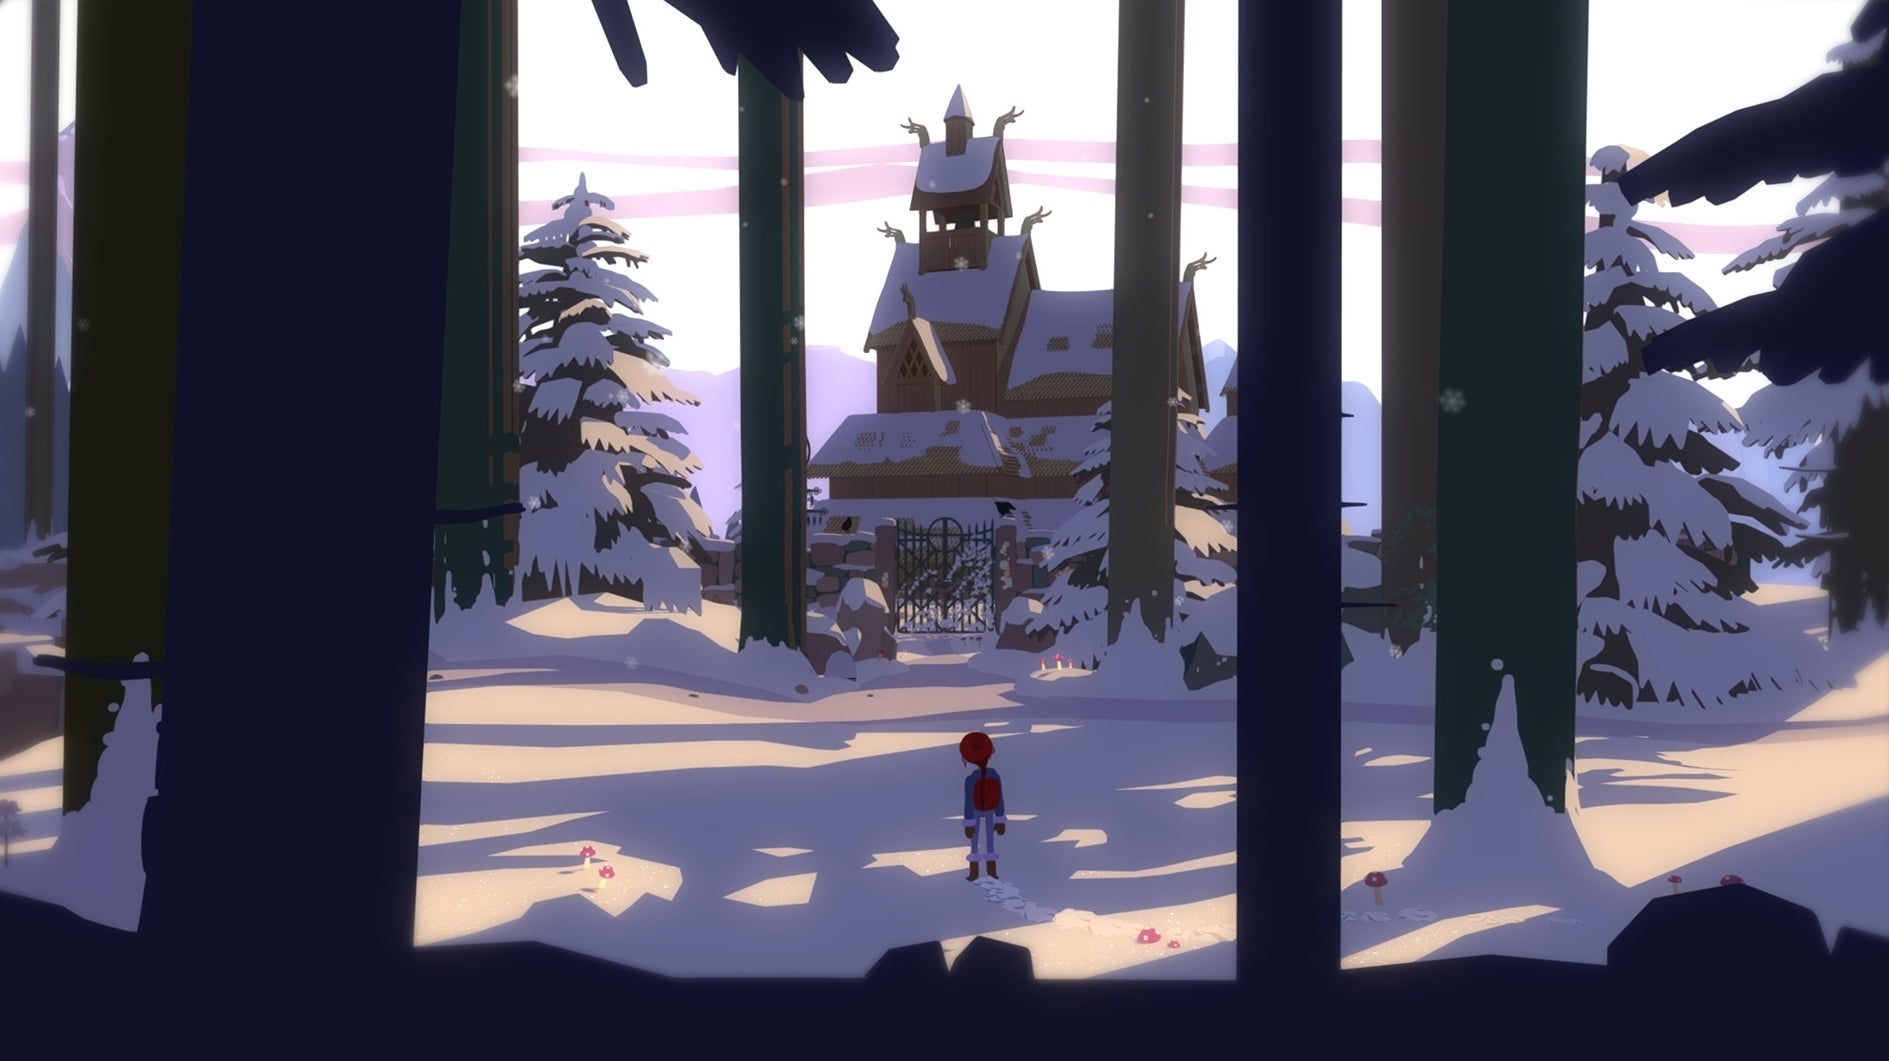 Bilder zu Röki Test: Wie ein schwedischer Studio-Ghibli-Film